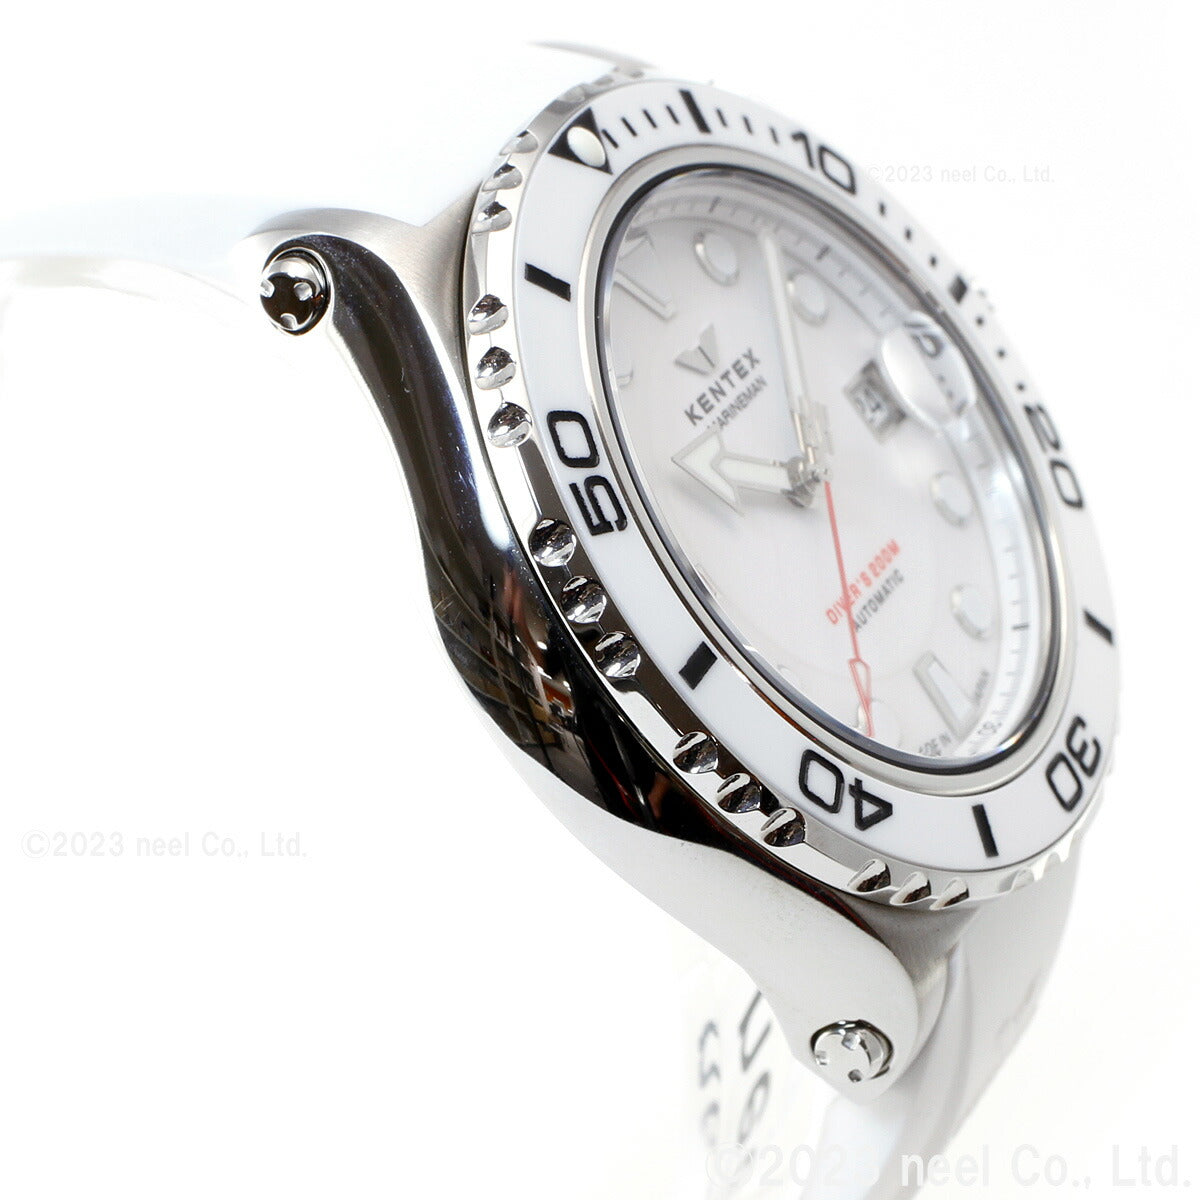 ケンテックス KENTEX 限定モデル 腕時計 時計 メンズ マリンマン シーホースII 日本製 S706M-15